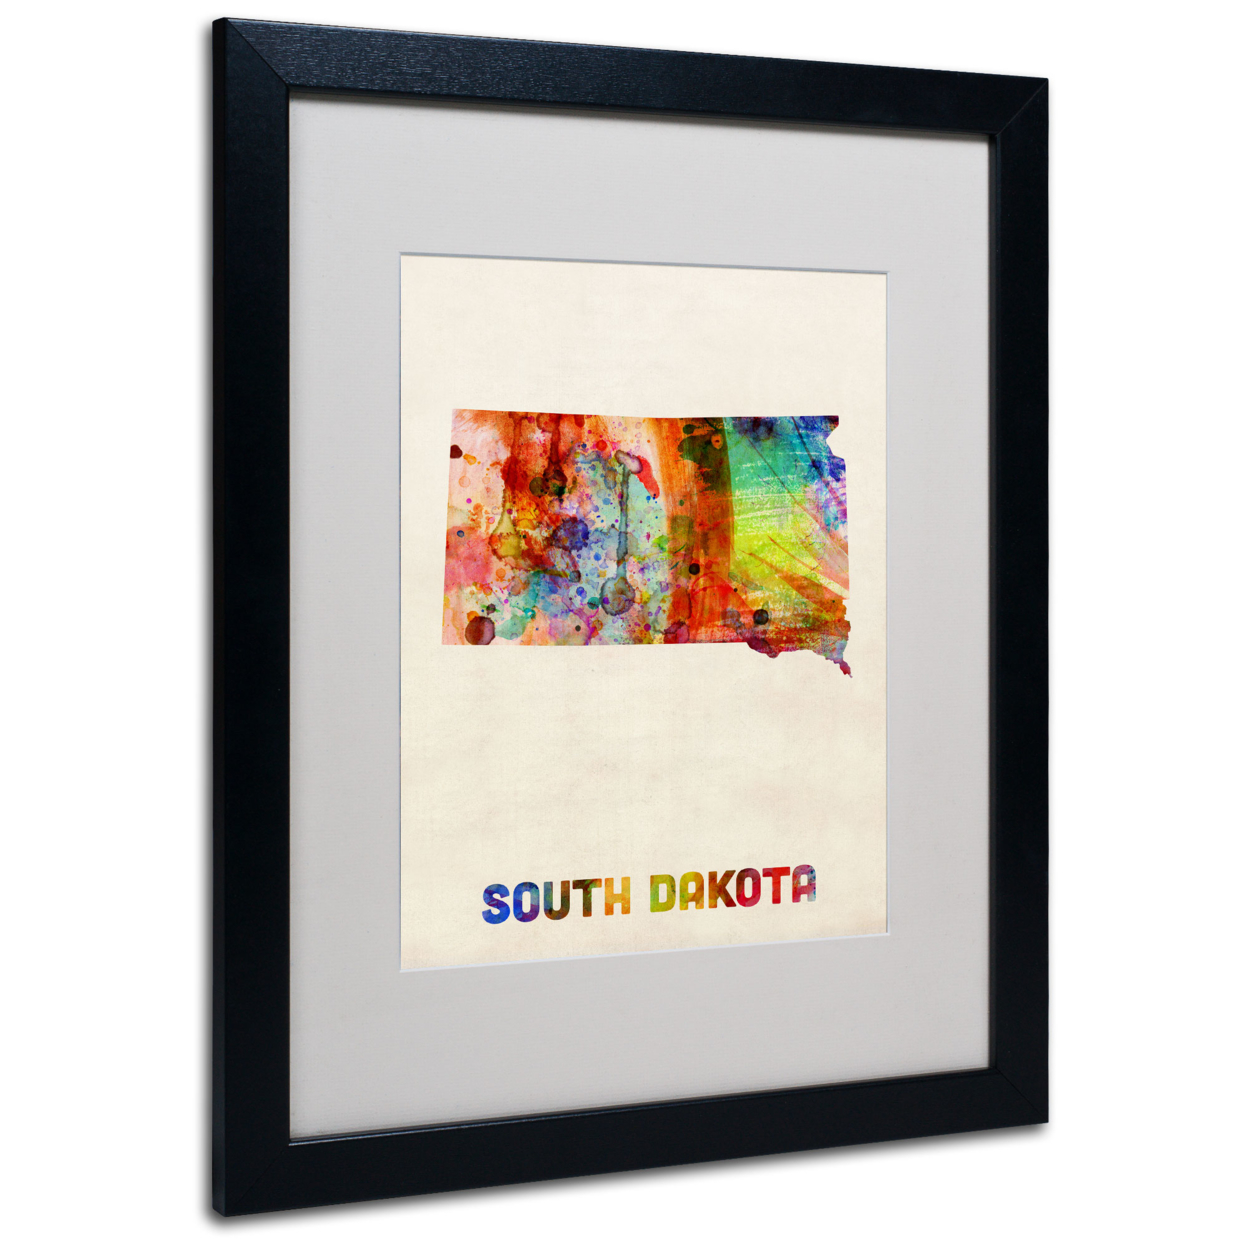 Michael Tompsett 'South Dakota Map' Black Wooden Framed Art 18 X 22 Inches